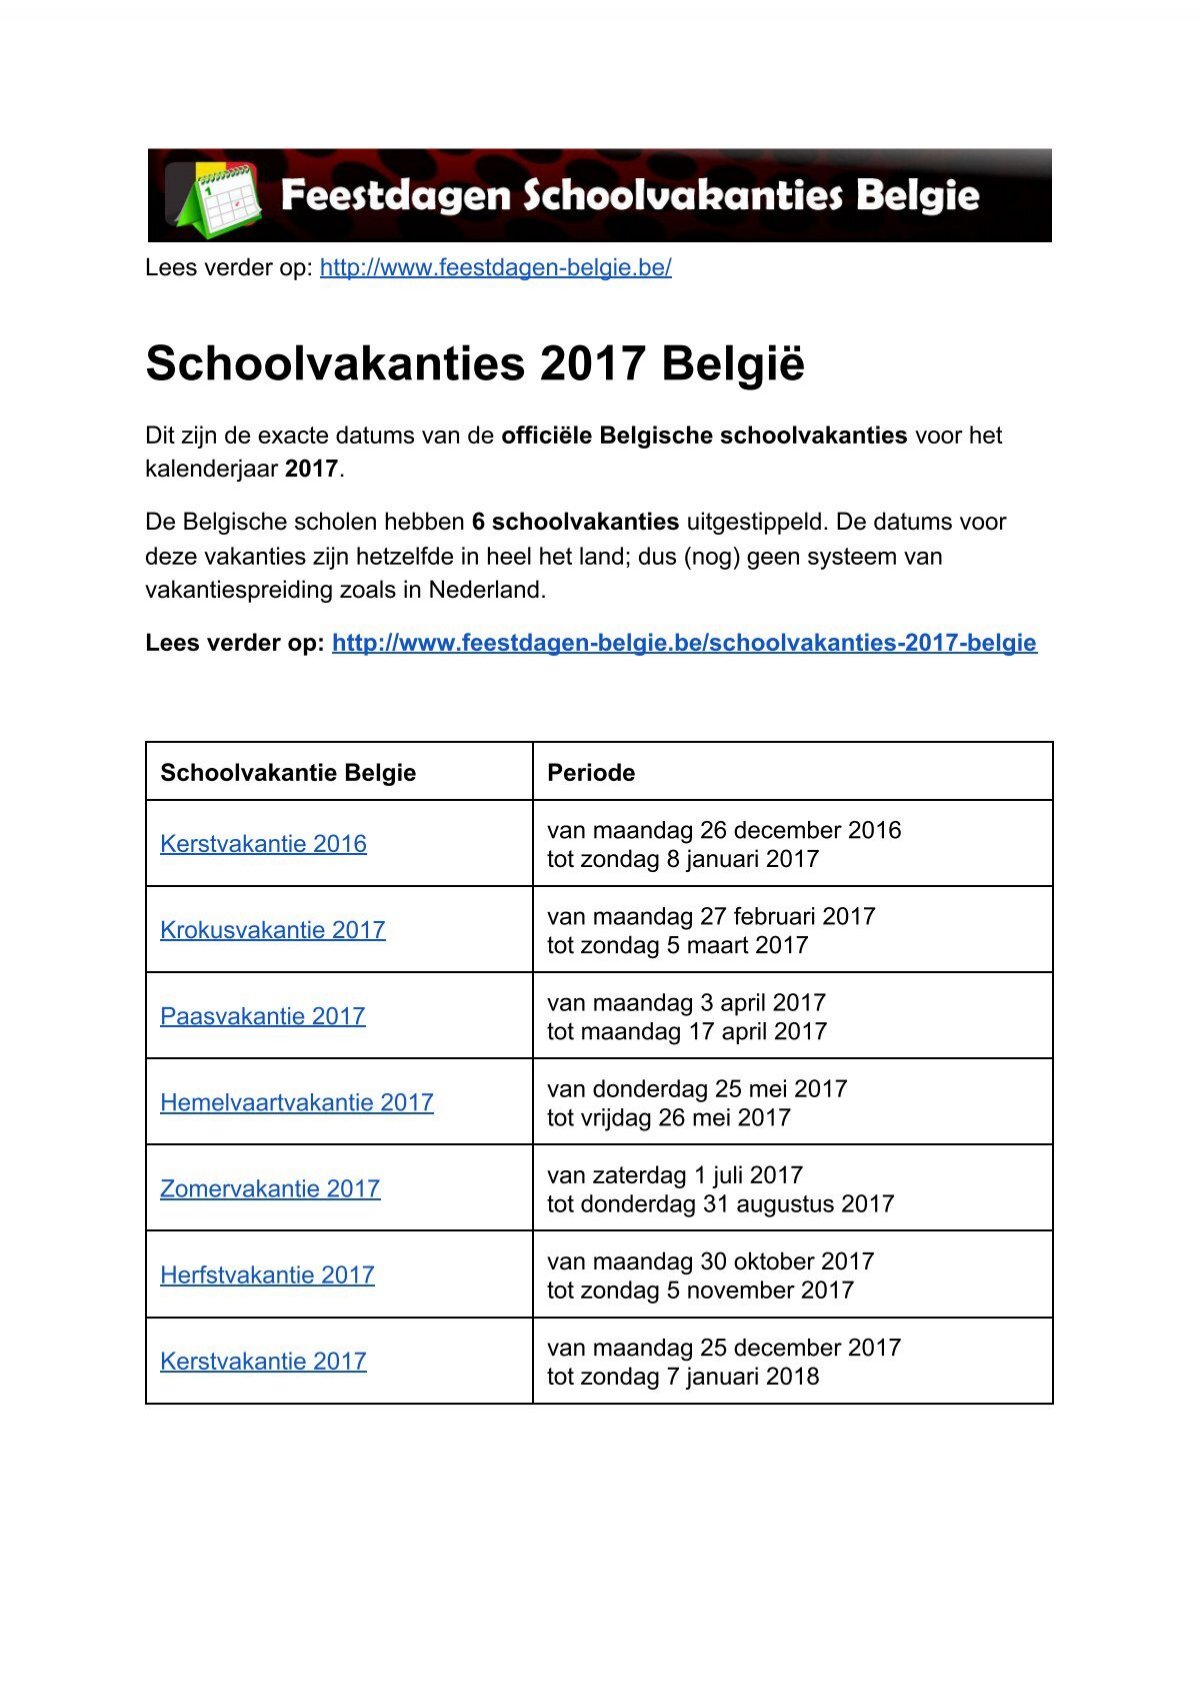 Boost Carry Patch Schoolvakanties 2017 Belgie - Exacte datums op kalender